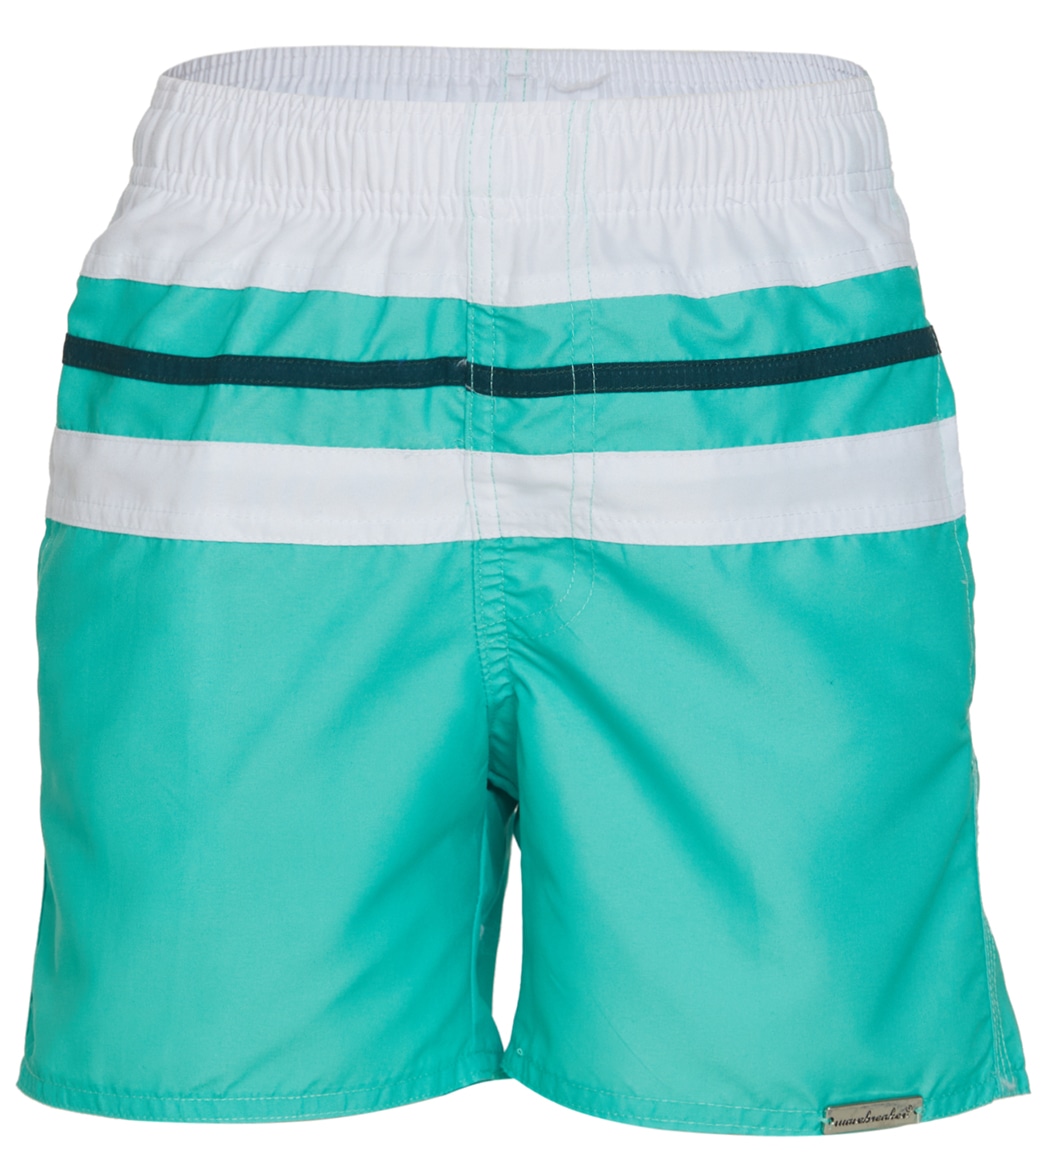 Wavebreaker Boys' Striped Swim Trunks - Light Green Us 10 Polyester - Swimoutlet.com